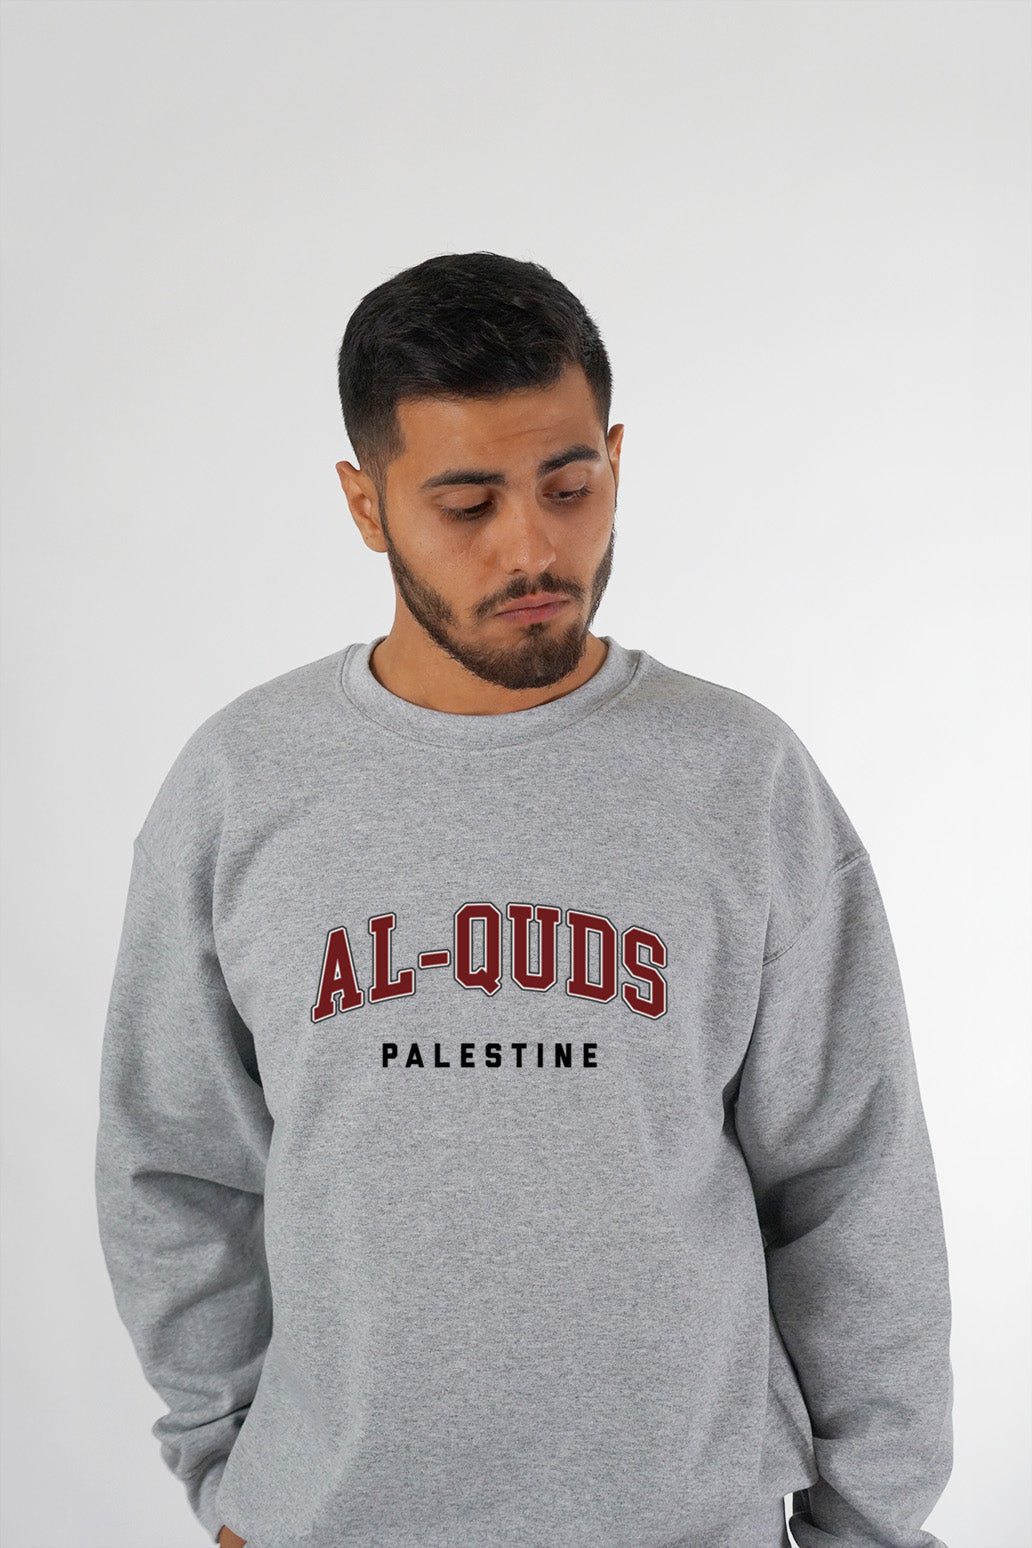 Al-Quds, Palestine - Sweatshirt